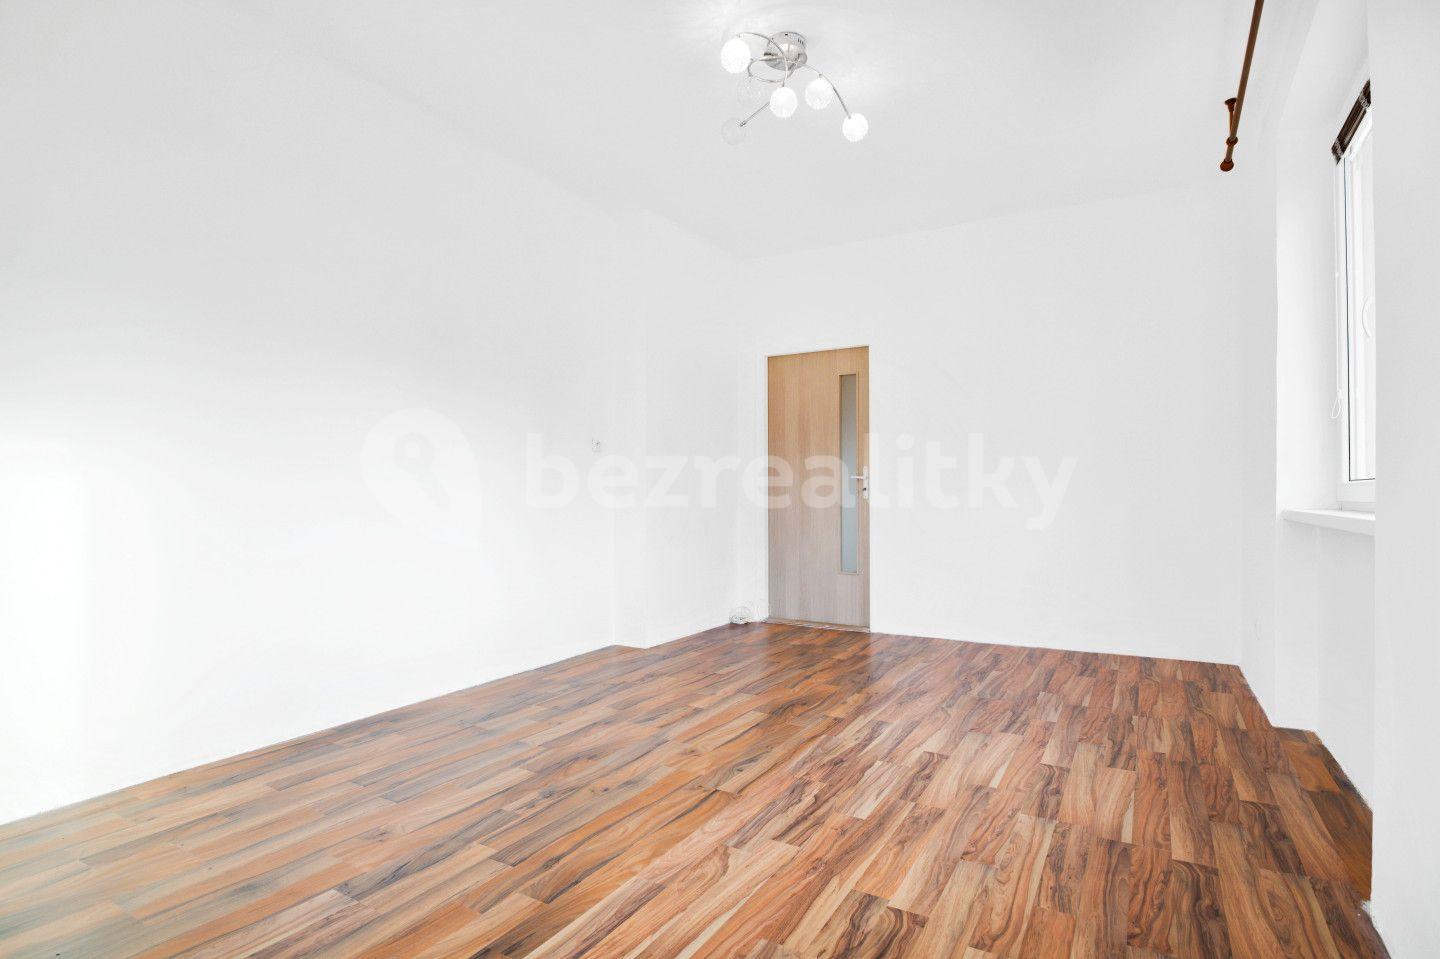 2 bedroom flat for sale, 54 m², Sluneční, Chomutov, Ústecký Region